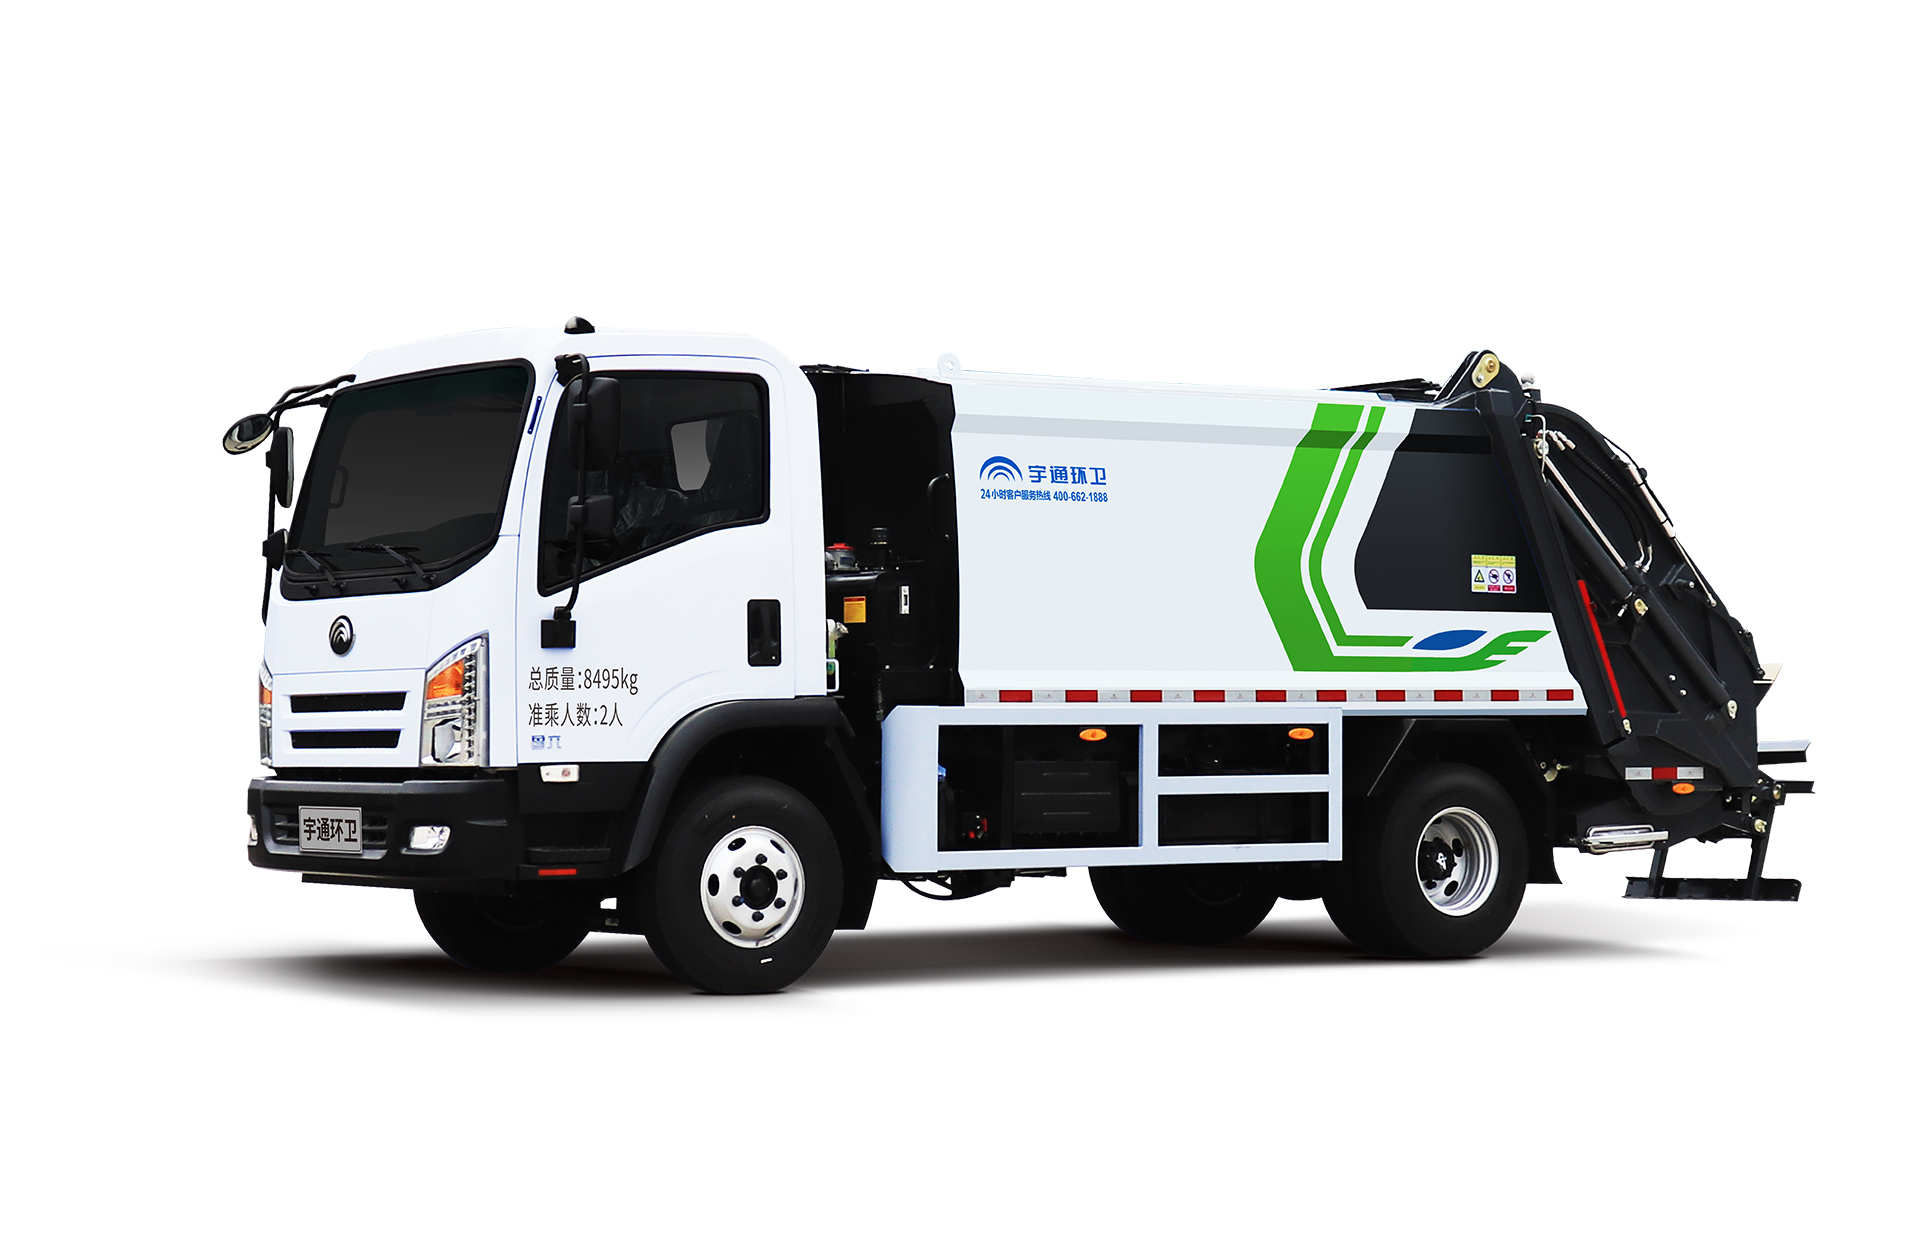 8t壓縮式垃圾車 宇通環衛壓縮式垃圾車主要具有裝載能力強、垃圾可壓縮、密封性能好等特點。